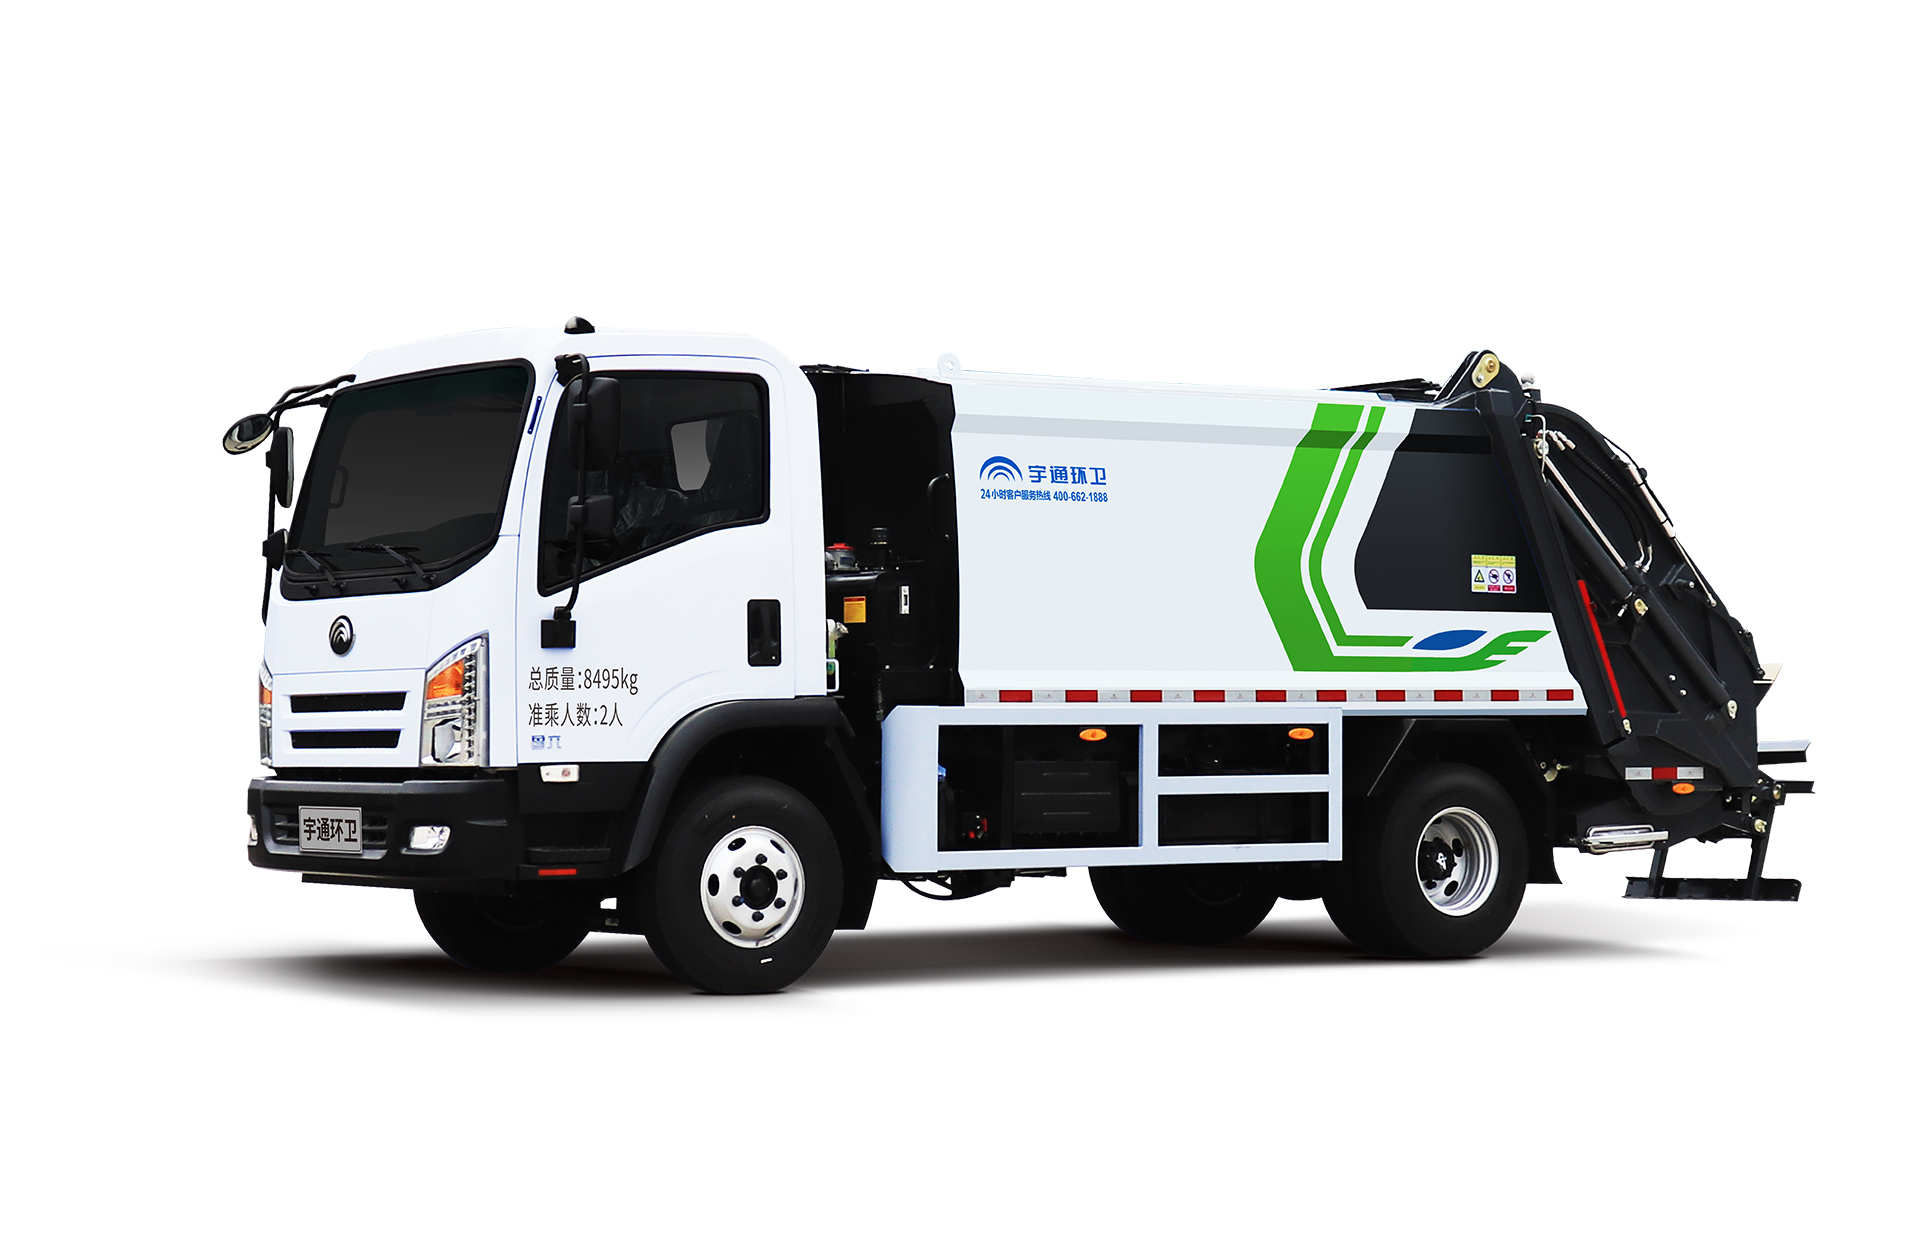 8t壓縮式垃圾車 宇通環衛壓縮式垃圾車主要具有裝載能力強、垃圾可壓縮、密封性能好等特點。